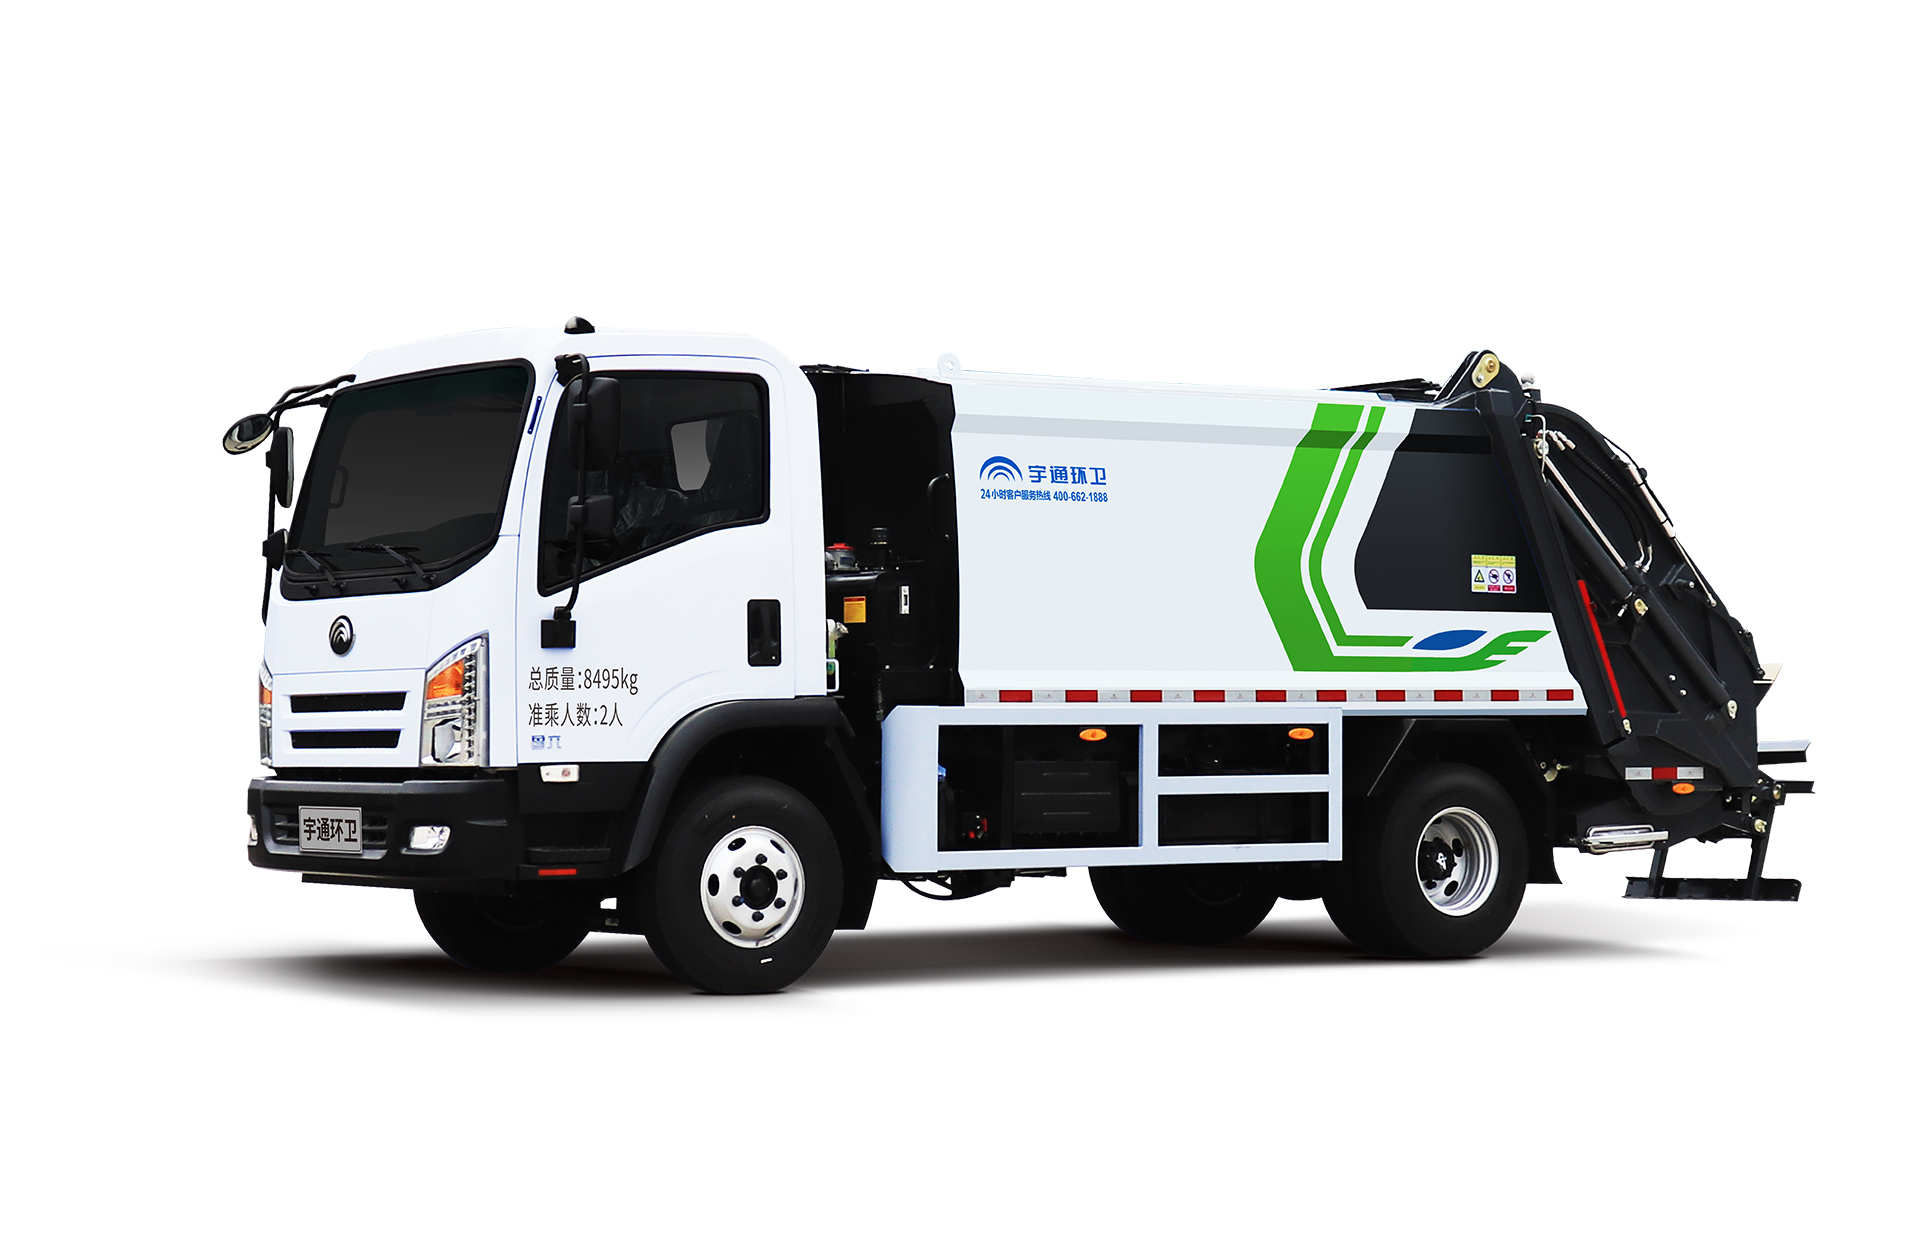 8t壓縮式垃圾車 宇通環衛壓縮式垃圾車主要具有裝載能力強、垃圾可壓縮、密封性能好等特點。